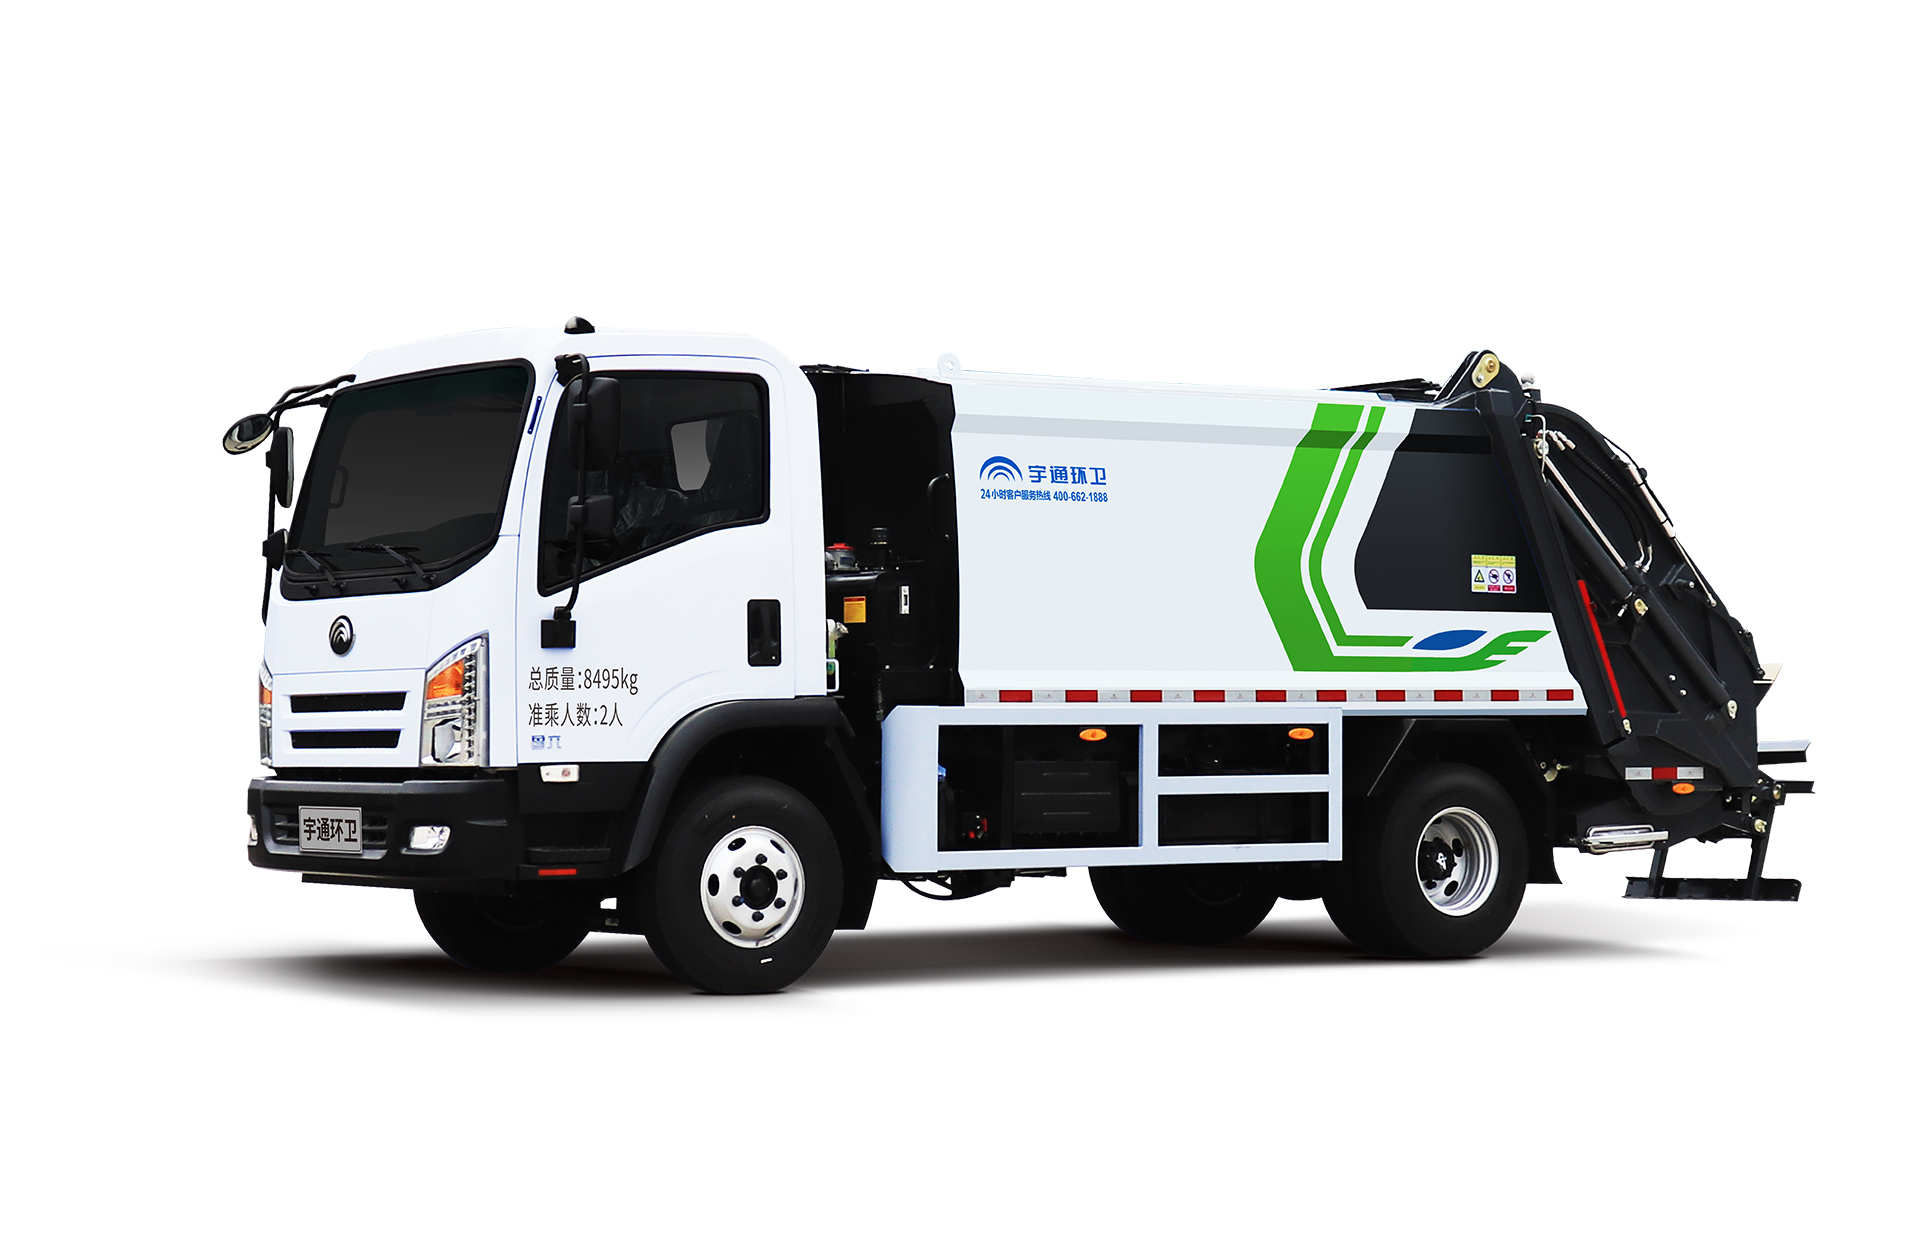 8t壓縮式垃圾車 宇通環衛壓縮式垃圾車主要具有裝載能力強、垃圾可壓縮、密封性能好等特點。